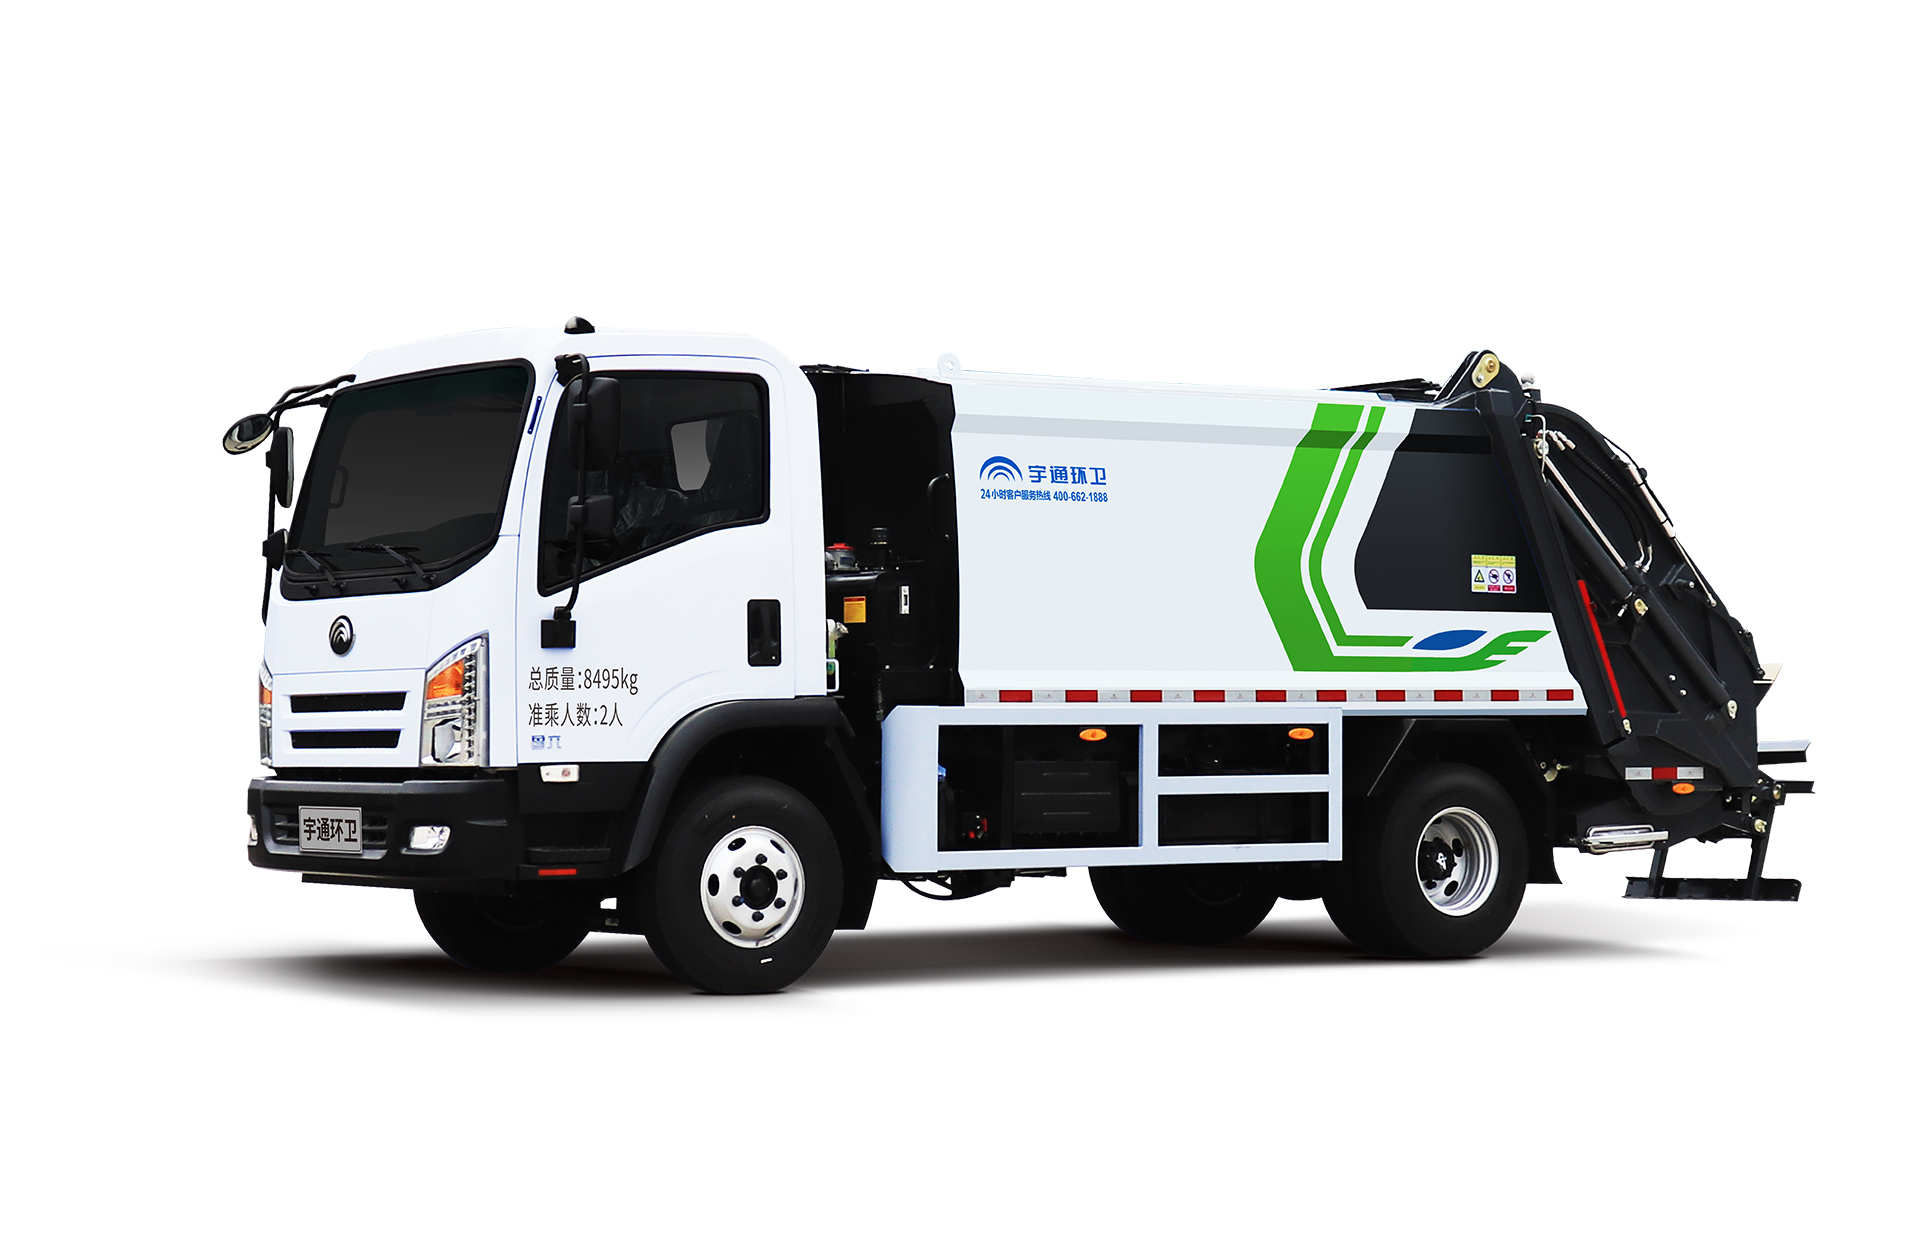 8t壓縮式垃圾車 宇通環衛壓縮式垃圾車主要具有裝載能力強、垃圾可壓縮、密封性能好等特點。